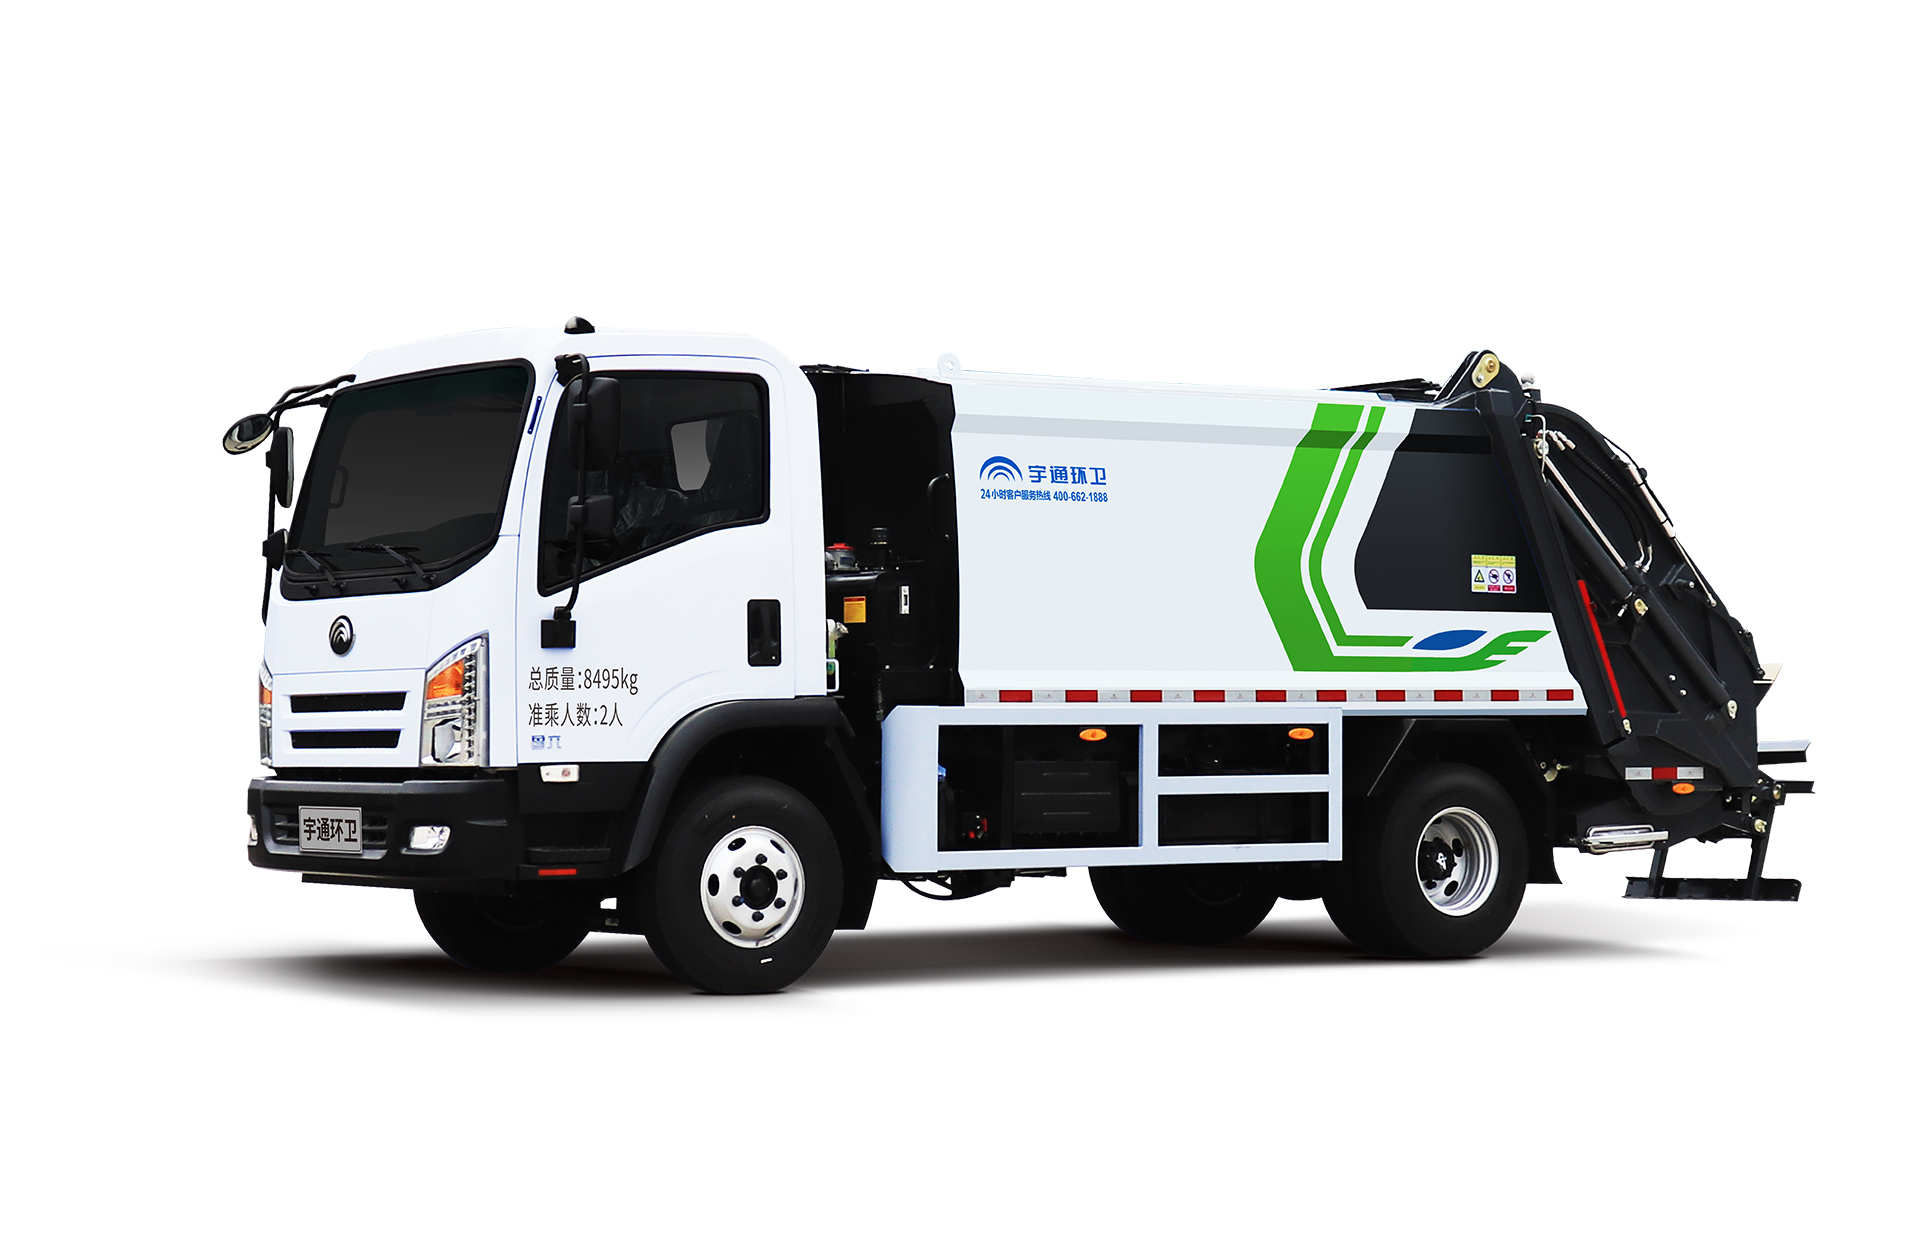 8t壓縮式垃圾車 宇通環衛壓縮式垃圾車主要具有裝載能力強、垃圾可壓縮、密封性能好等特點。